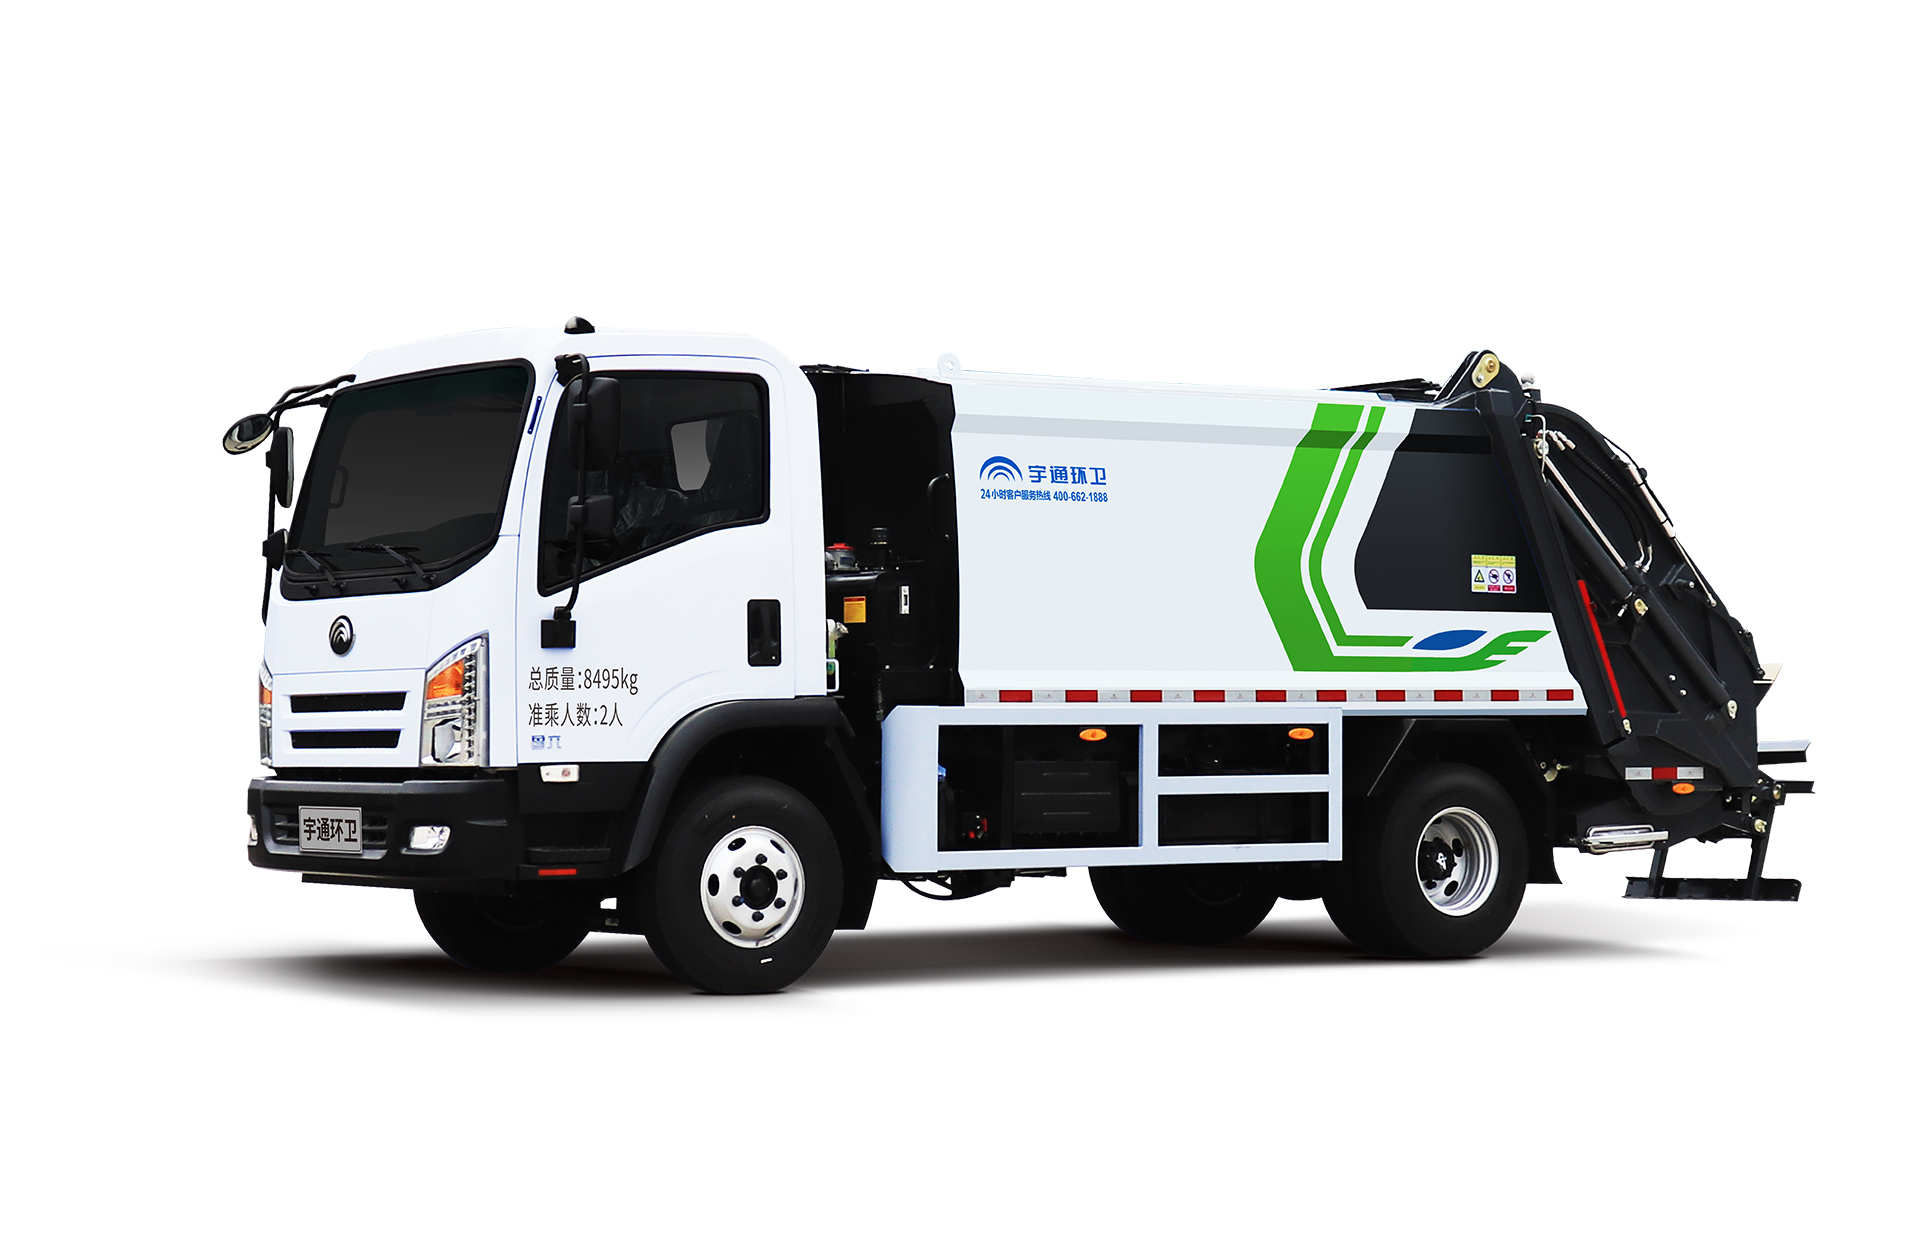 8t壓縮式垃圾車 宇通環衛壓縮式垃圾車主要具有裝載能力強、垃圾可壓縮、密封性能好等特點。